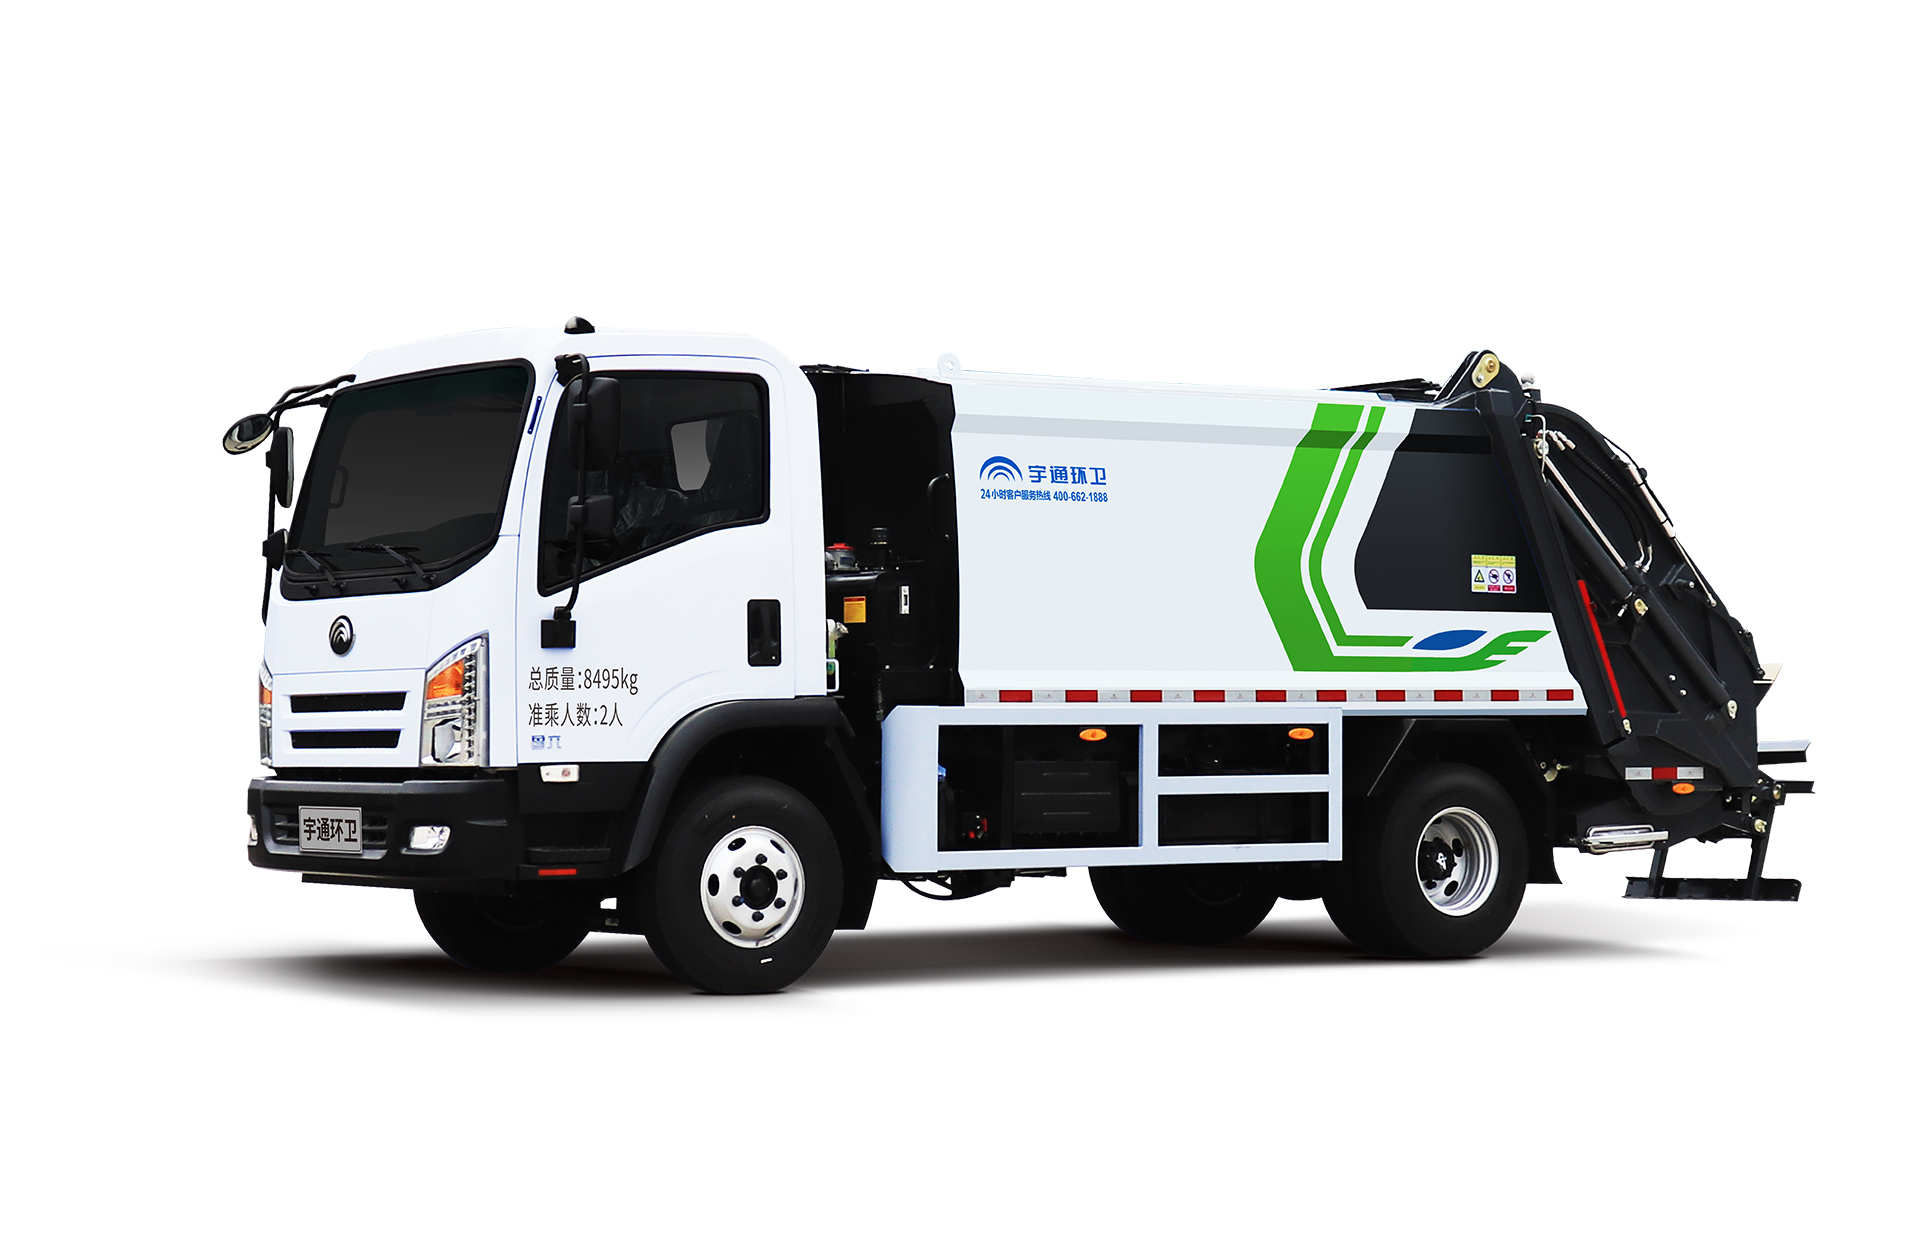 8t壓縮式垃圾車 宇通環衛壓縮式垃圾車主要具有裝載能力強、垃圾可壓縮、密封性能好等特點。